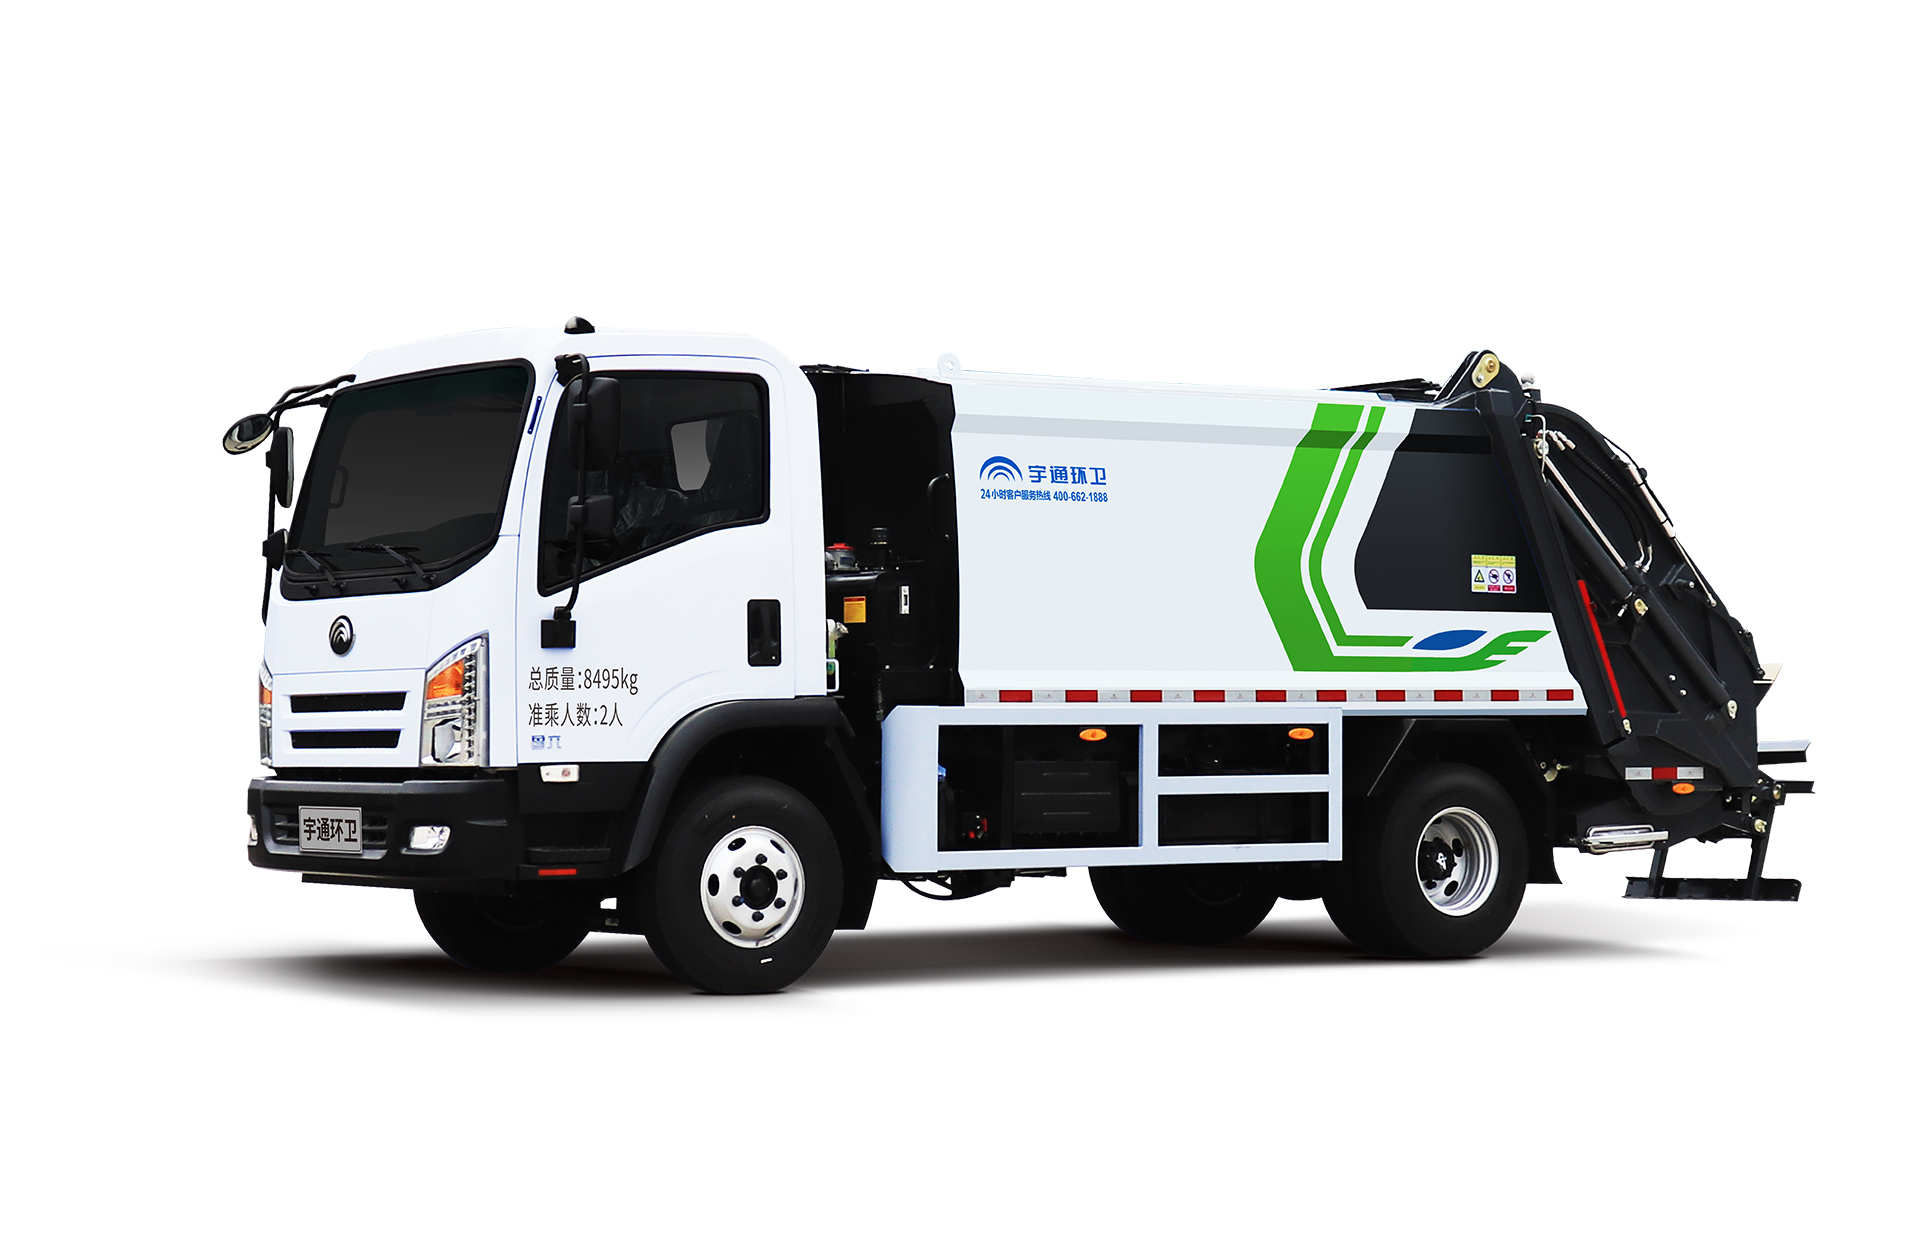 8t壓縮式垃圾車 宇通環衛壓縮式垃圾車主要具有裝載能力強、垃圾可壓縮、密封性能好等特點。